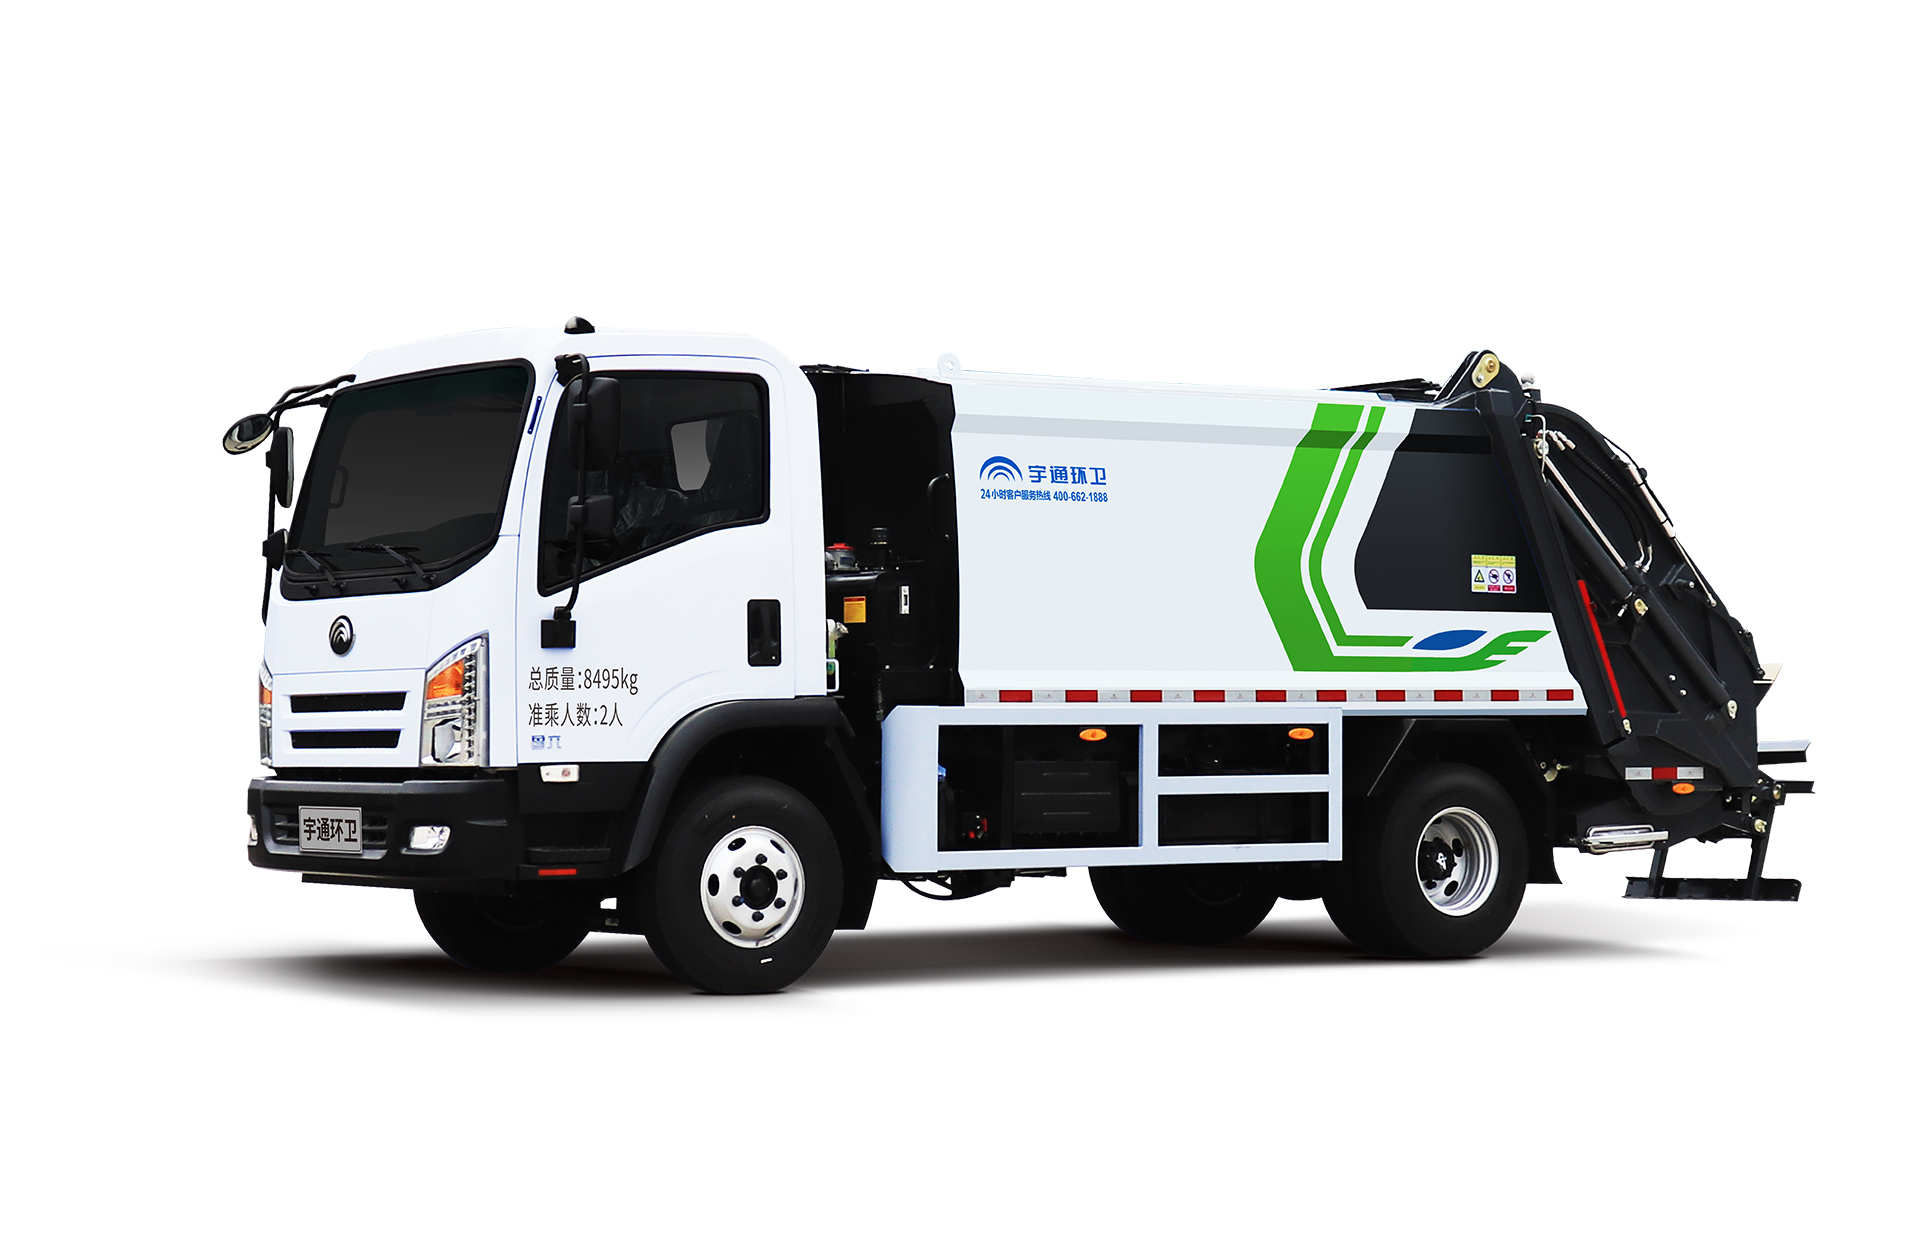 8t壓縮式垃圾車 宇通環衛壓縮式垃圾車主要具有裝載能力強、垃圾可壓縮、密封性能好等特點。